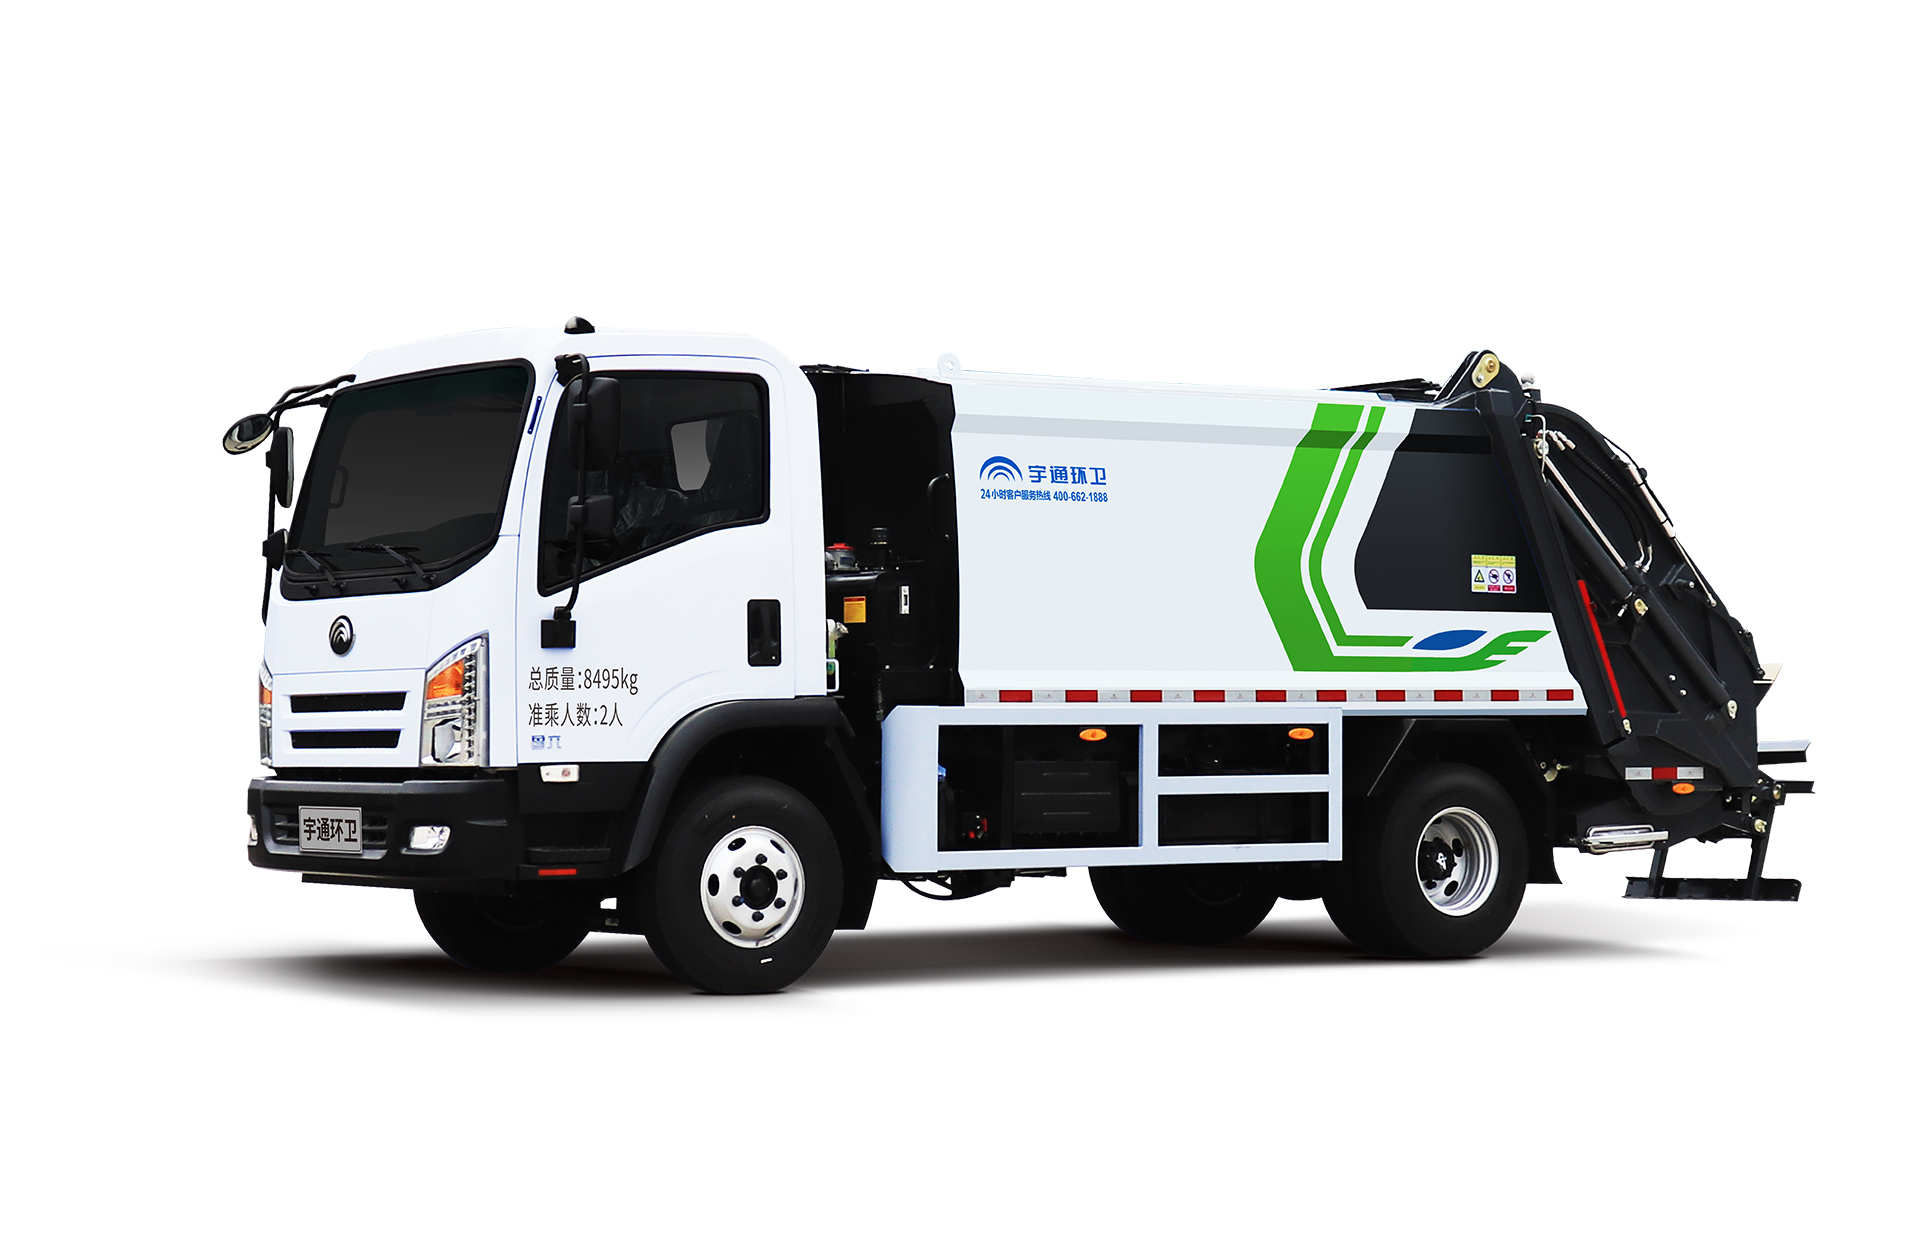 8t壓縮式垃圾車 宇通環衛壓縮式垃圾車主要具有裝載能力強、垃圾可壓縮、密封性能好等特點。